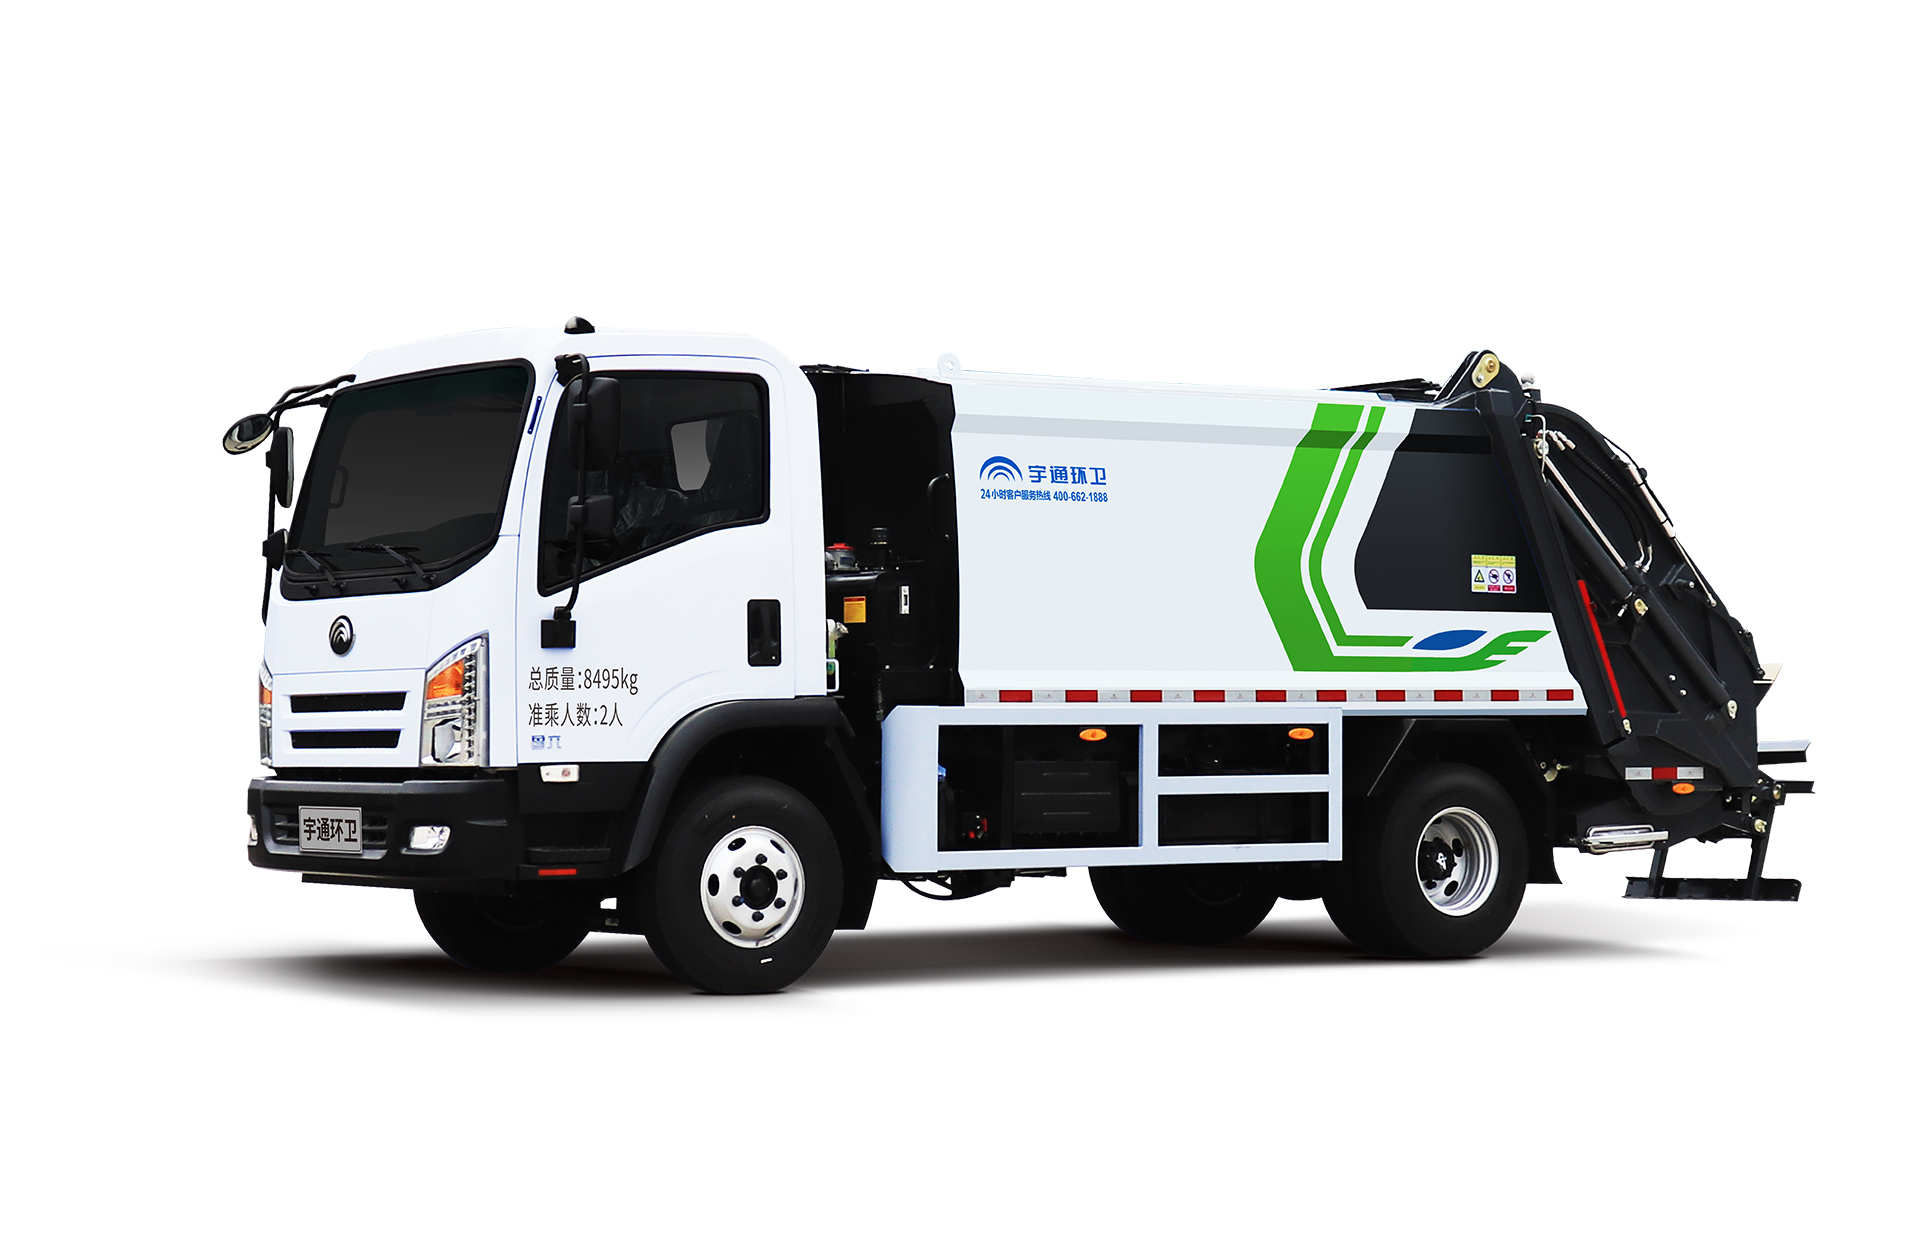 8t壓縮式垃圾車 宇通環衛壓縮式垃圾車主要具有裝載能力強、垃圾可壓縮、密封性能好等特點。